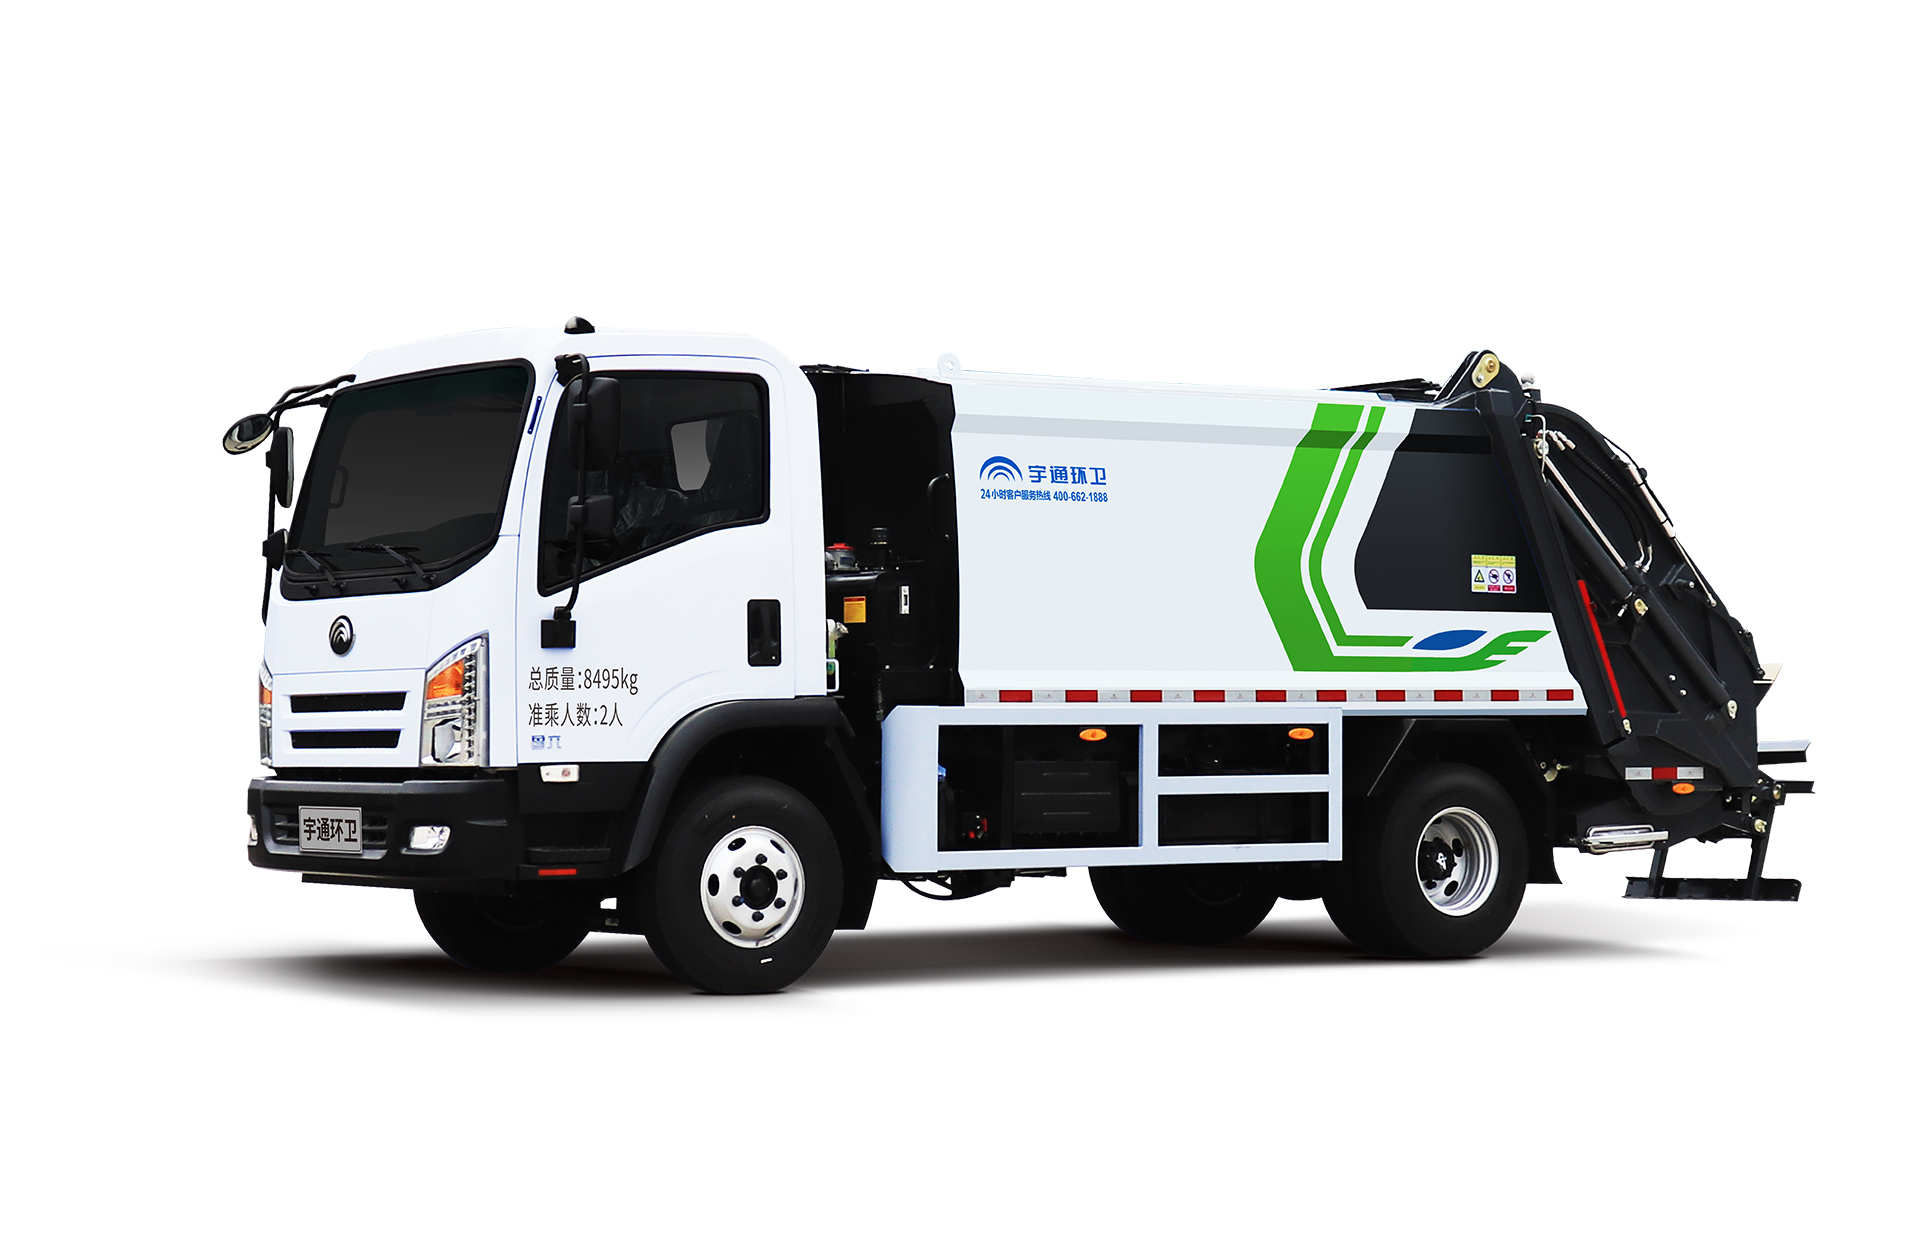 8t壓縮式垃圾車 宇通環衛壓縮式垃圾車主要具有裝載能力強、垃圾可壓縮、密封性能好等特點。